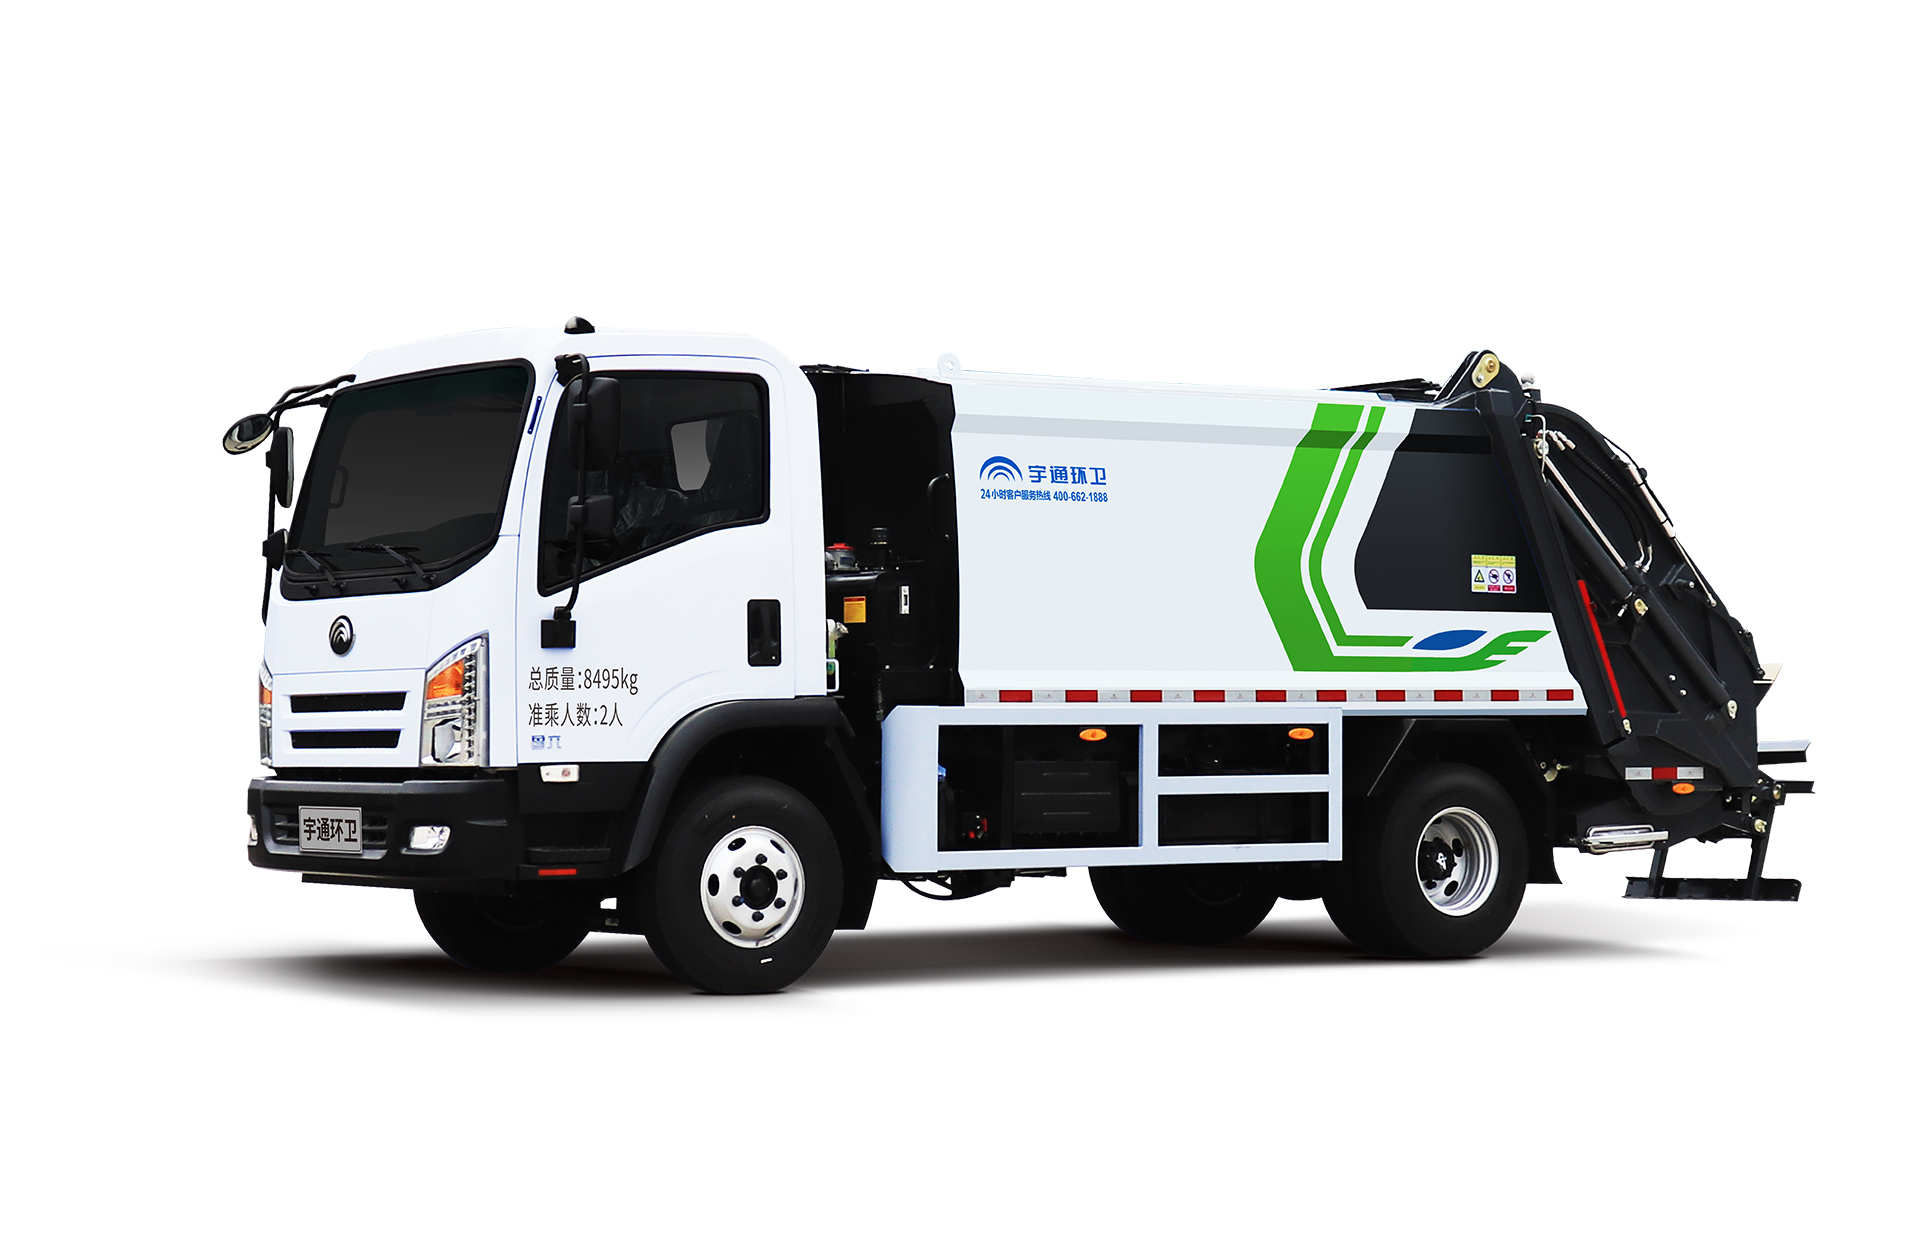 8t壓縮式垃圾車 宇通環衛壓縮式垃圾車主要具有裝載能力強、垃圾可壓縮、密封性能好等特點。